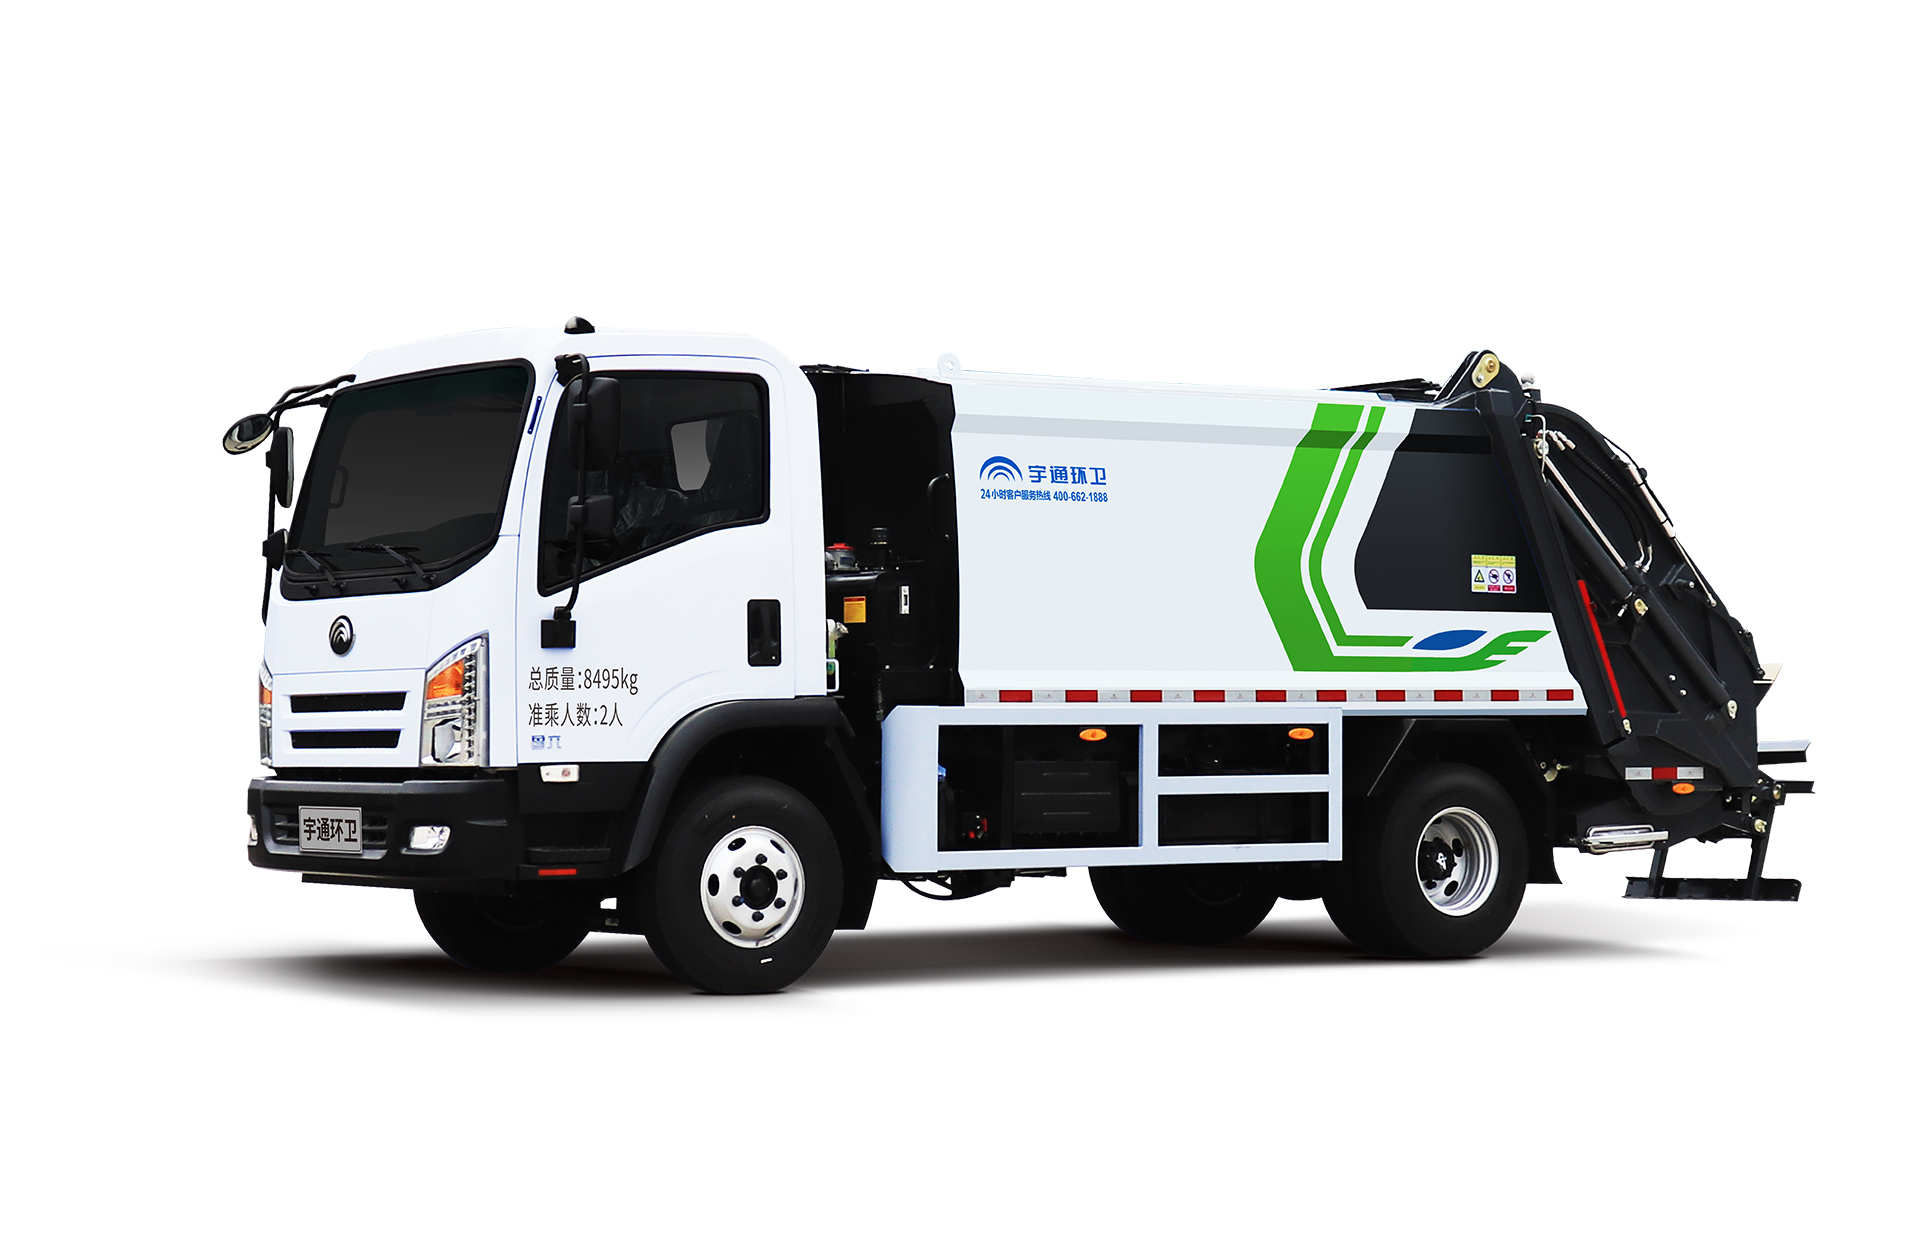 8t壓縮式垃圾車 宇通環衛壓縮式垃圾車主要具有裝載能力強、垃圾可壓縮、密封性能好等特點。